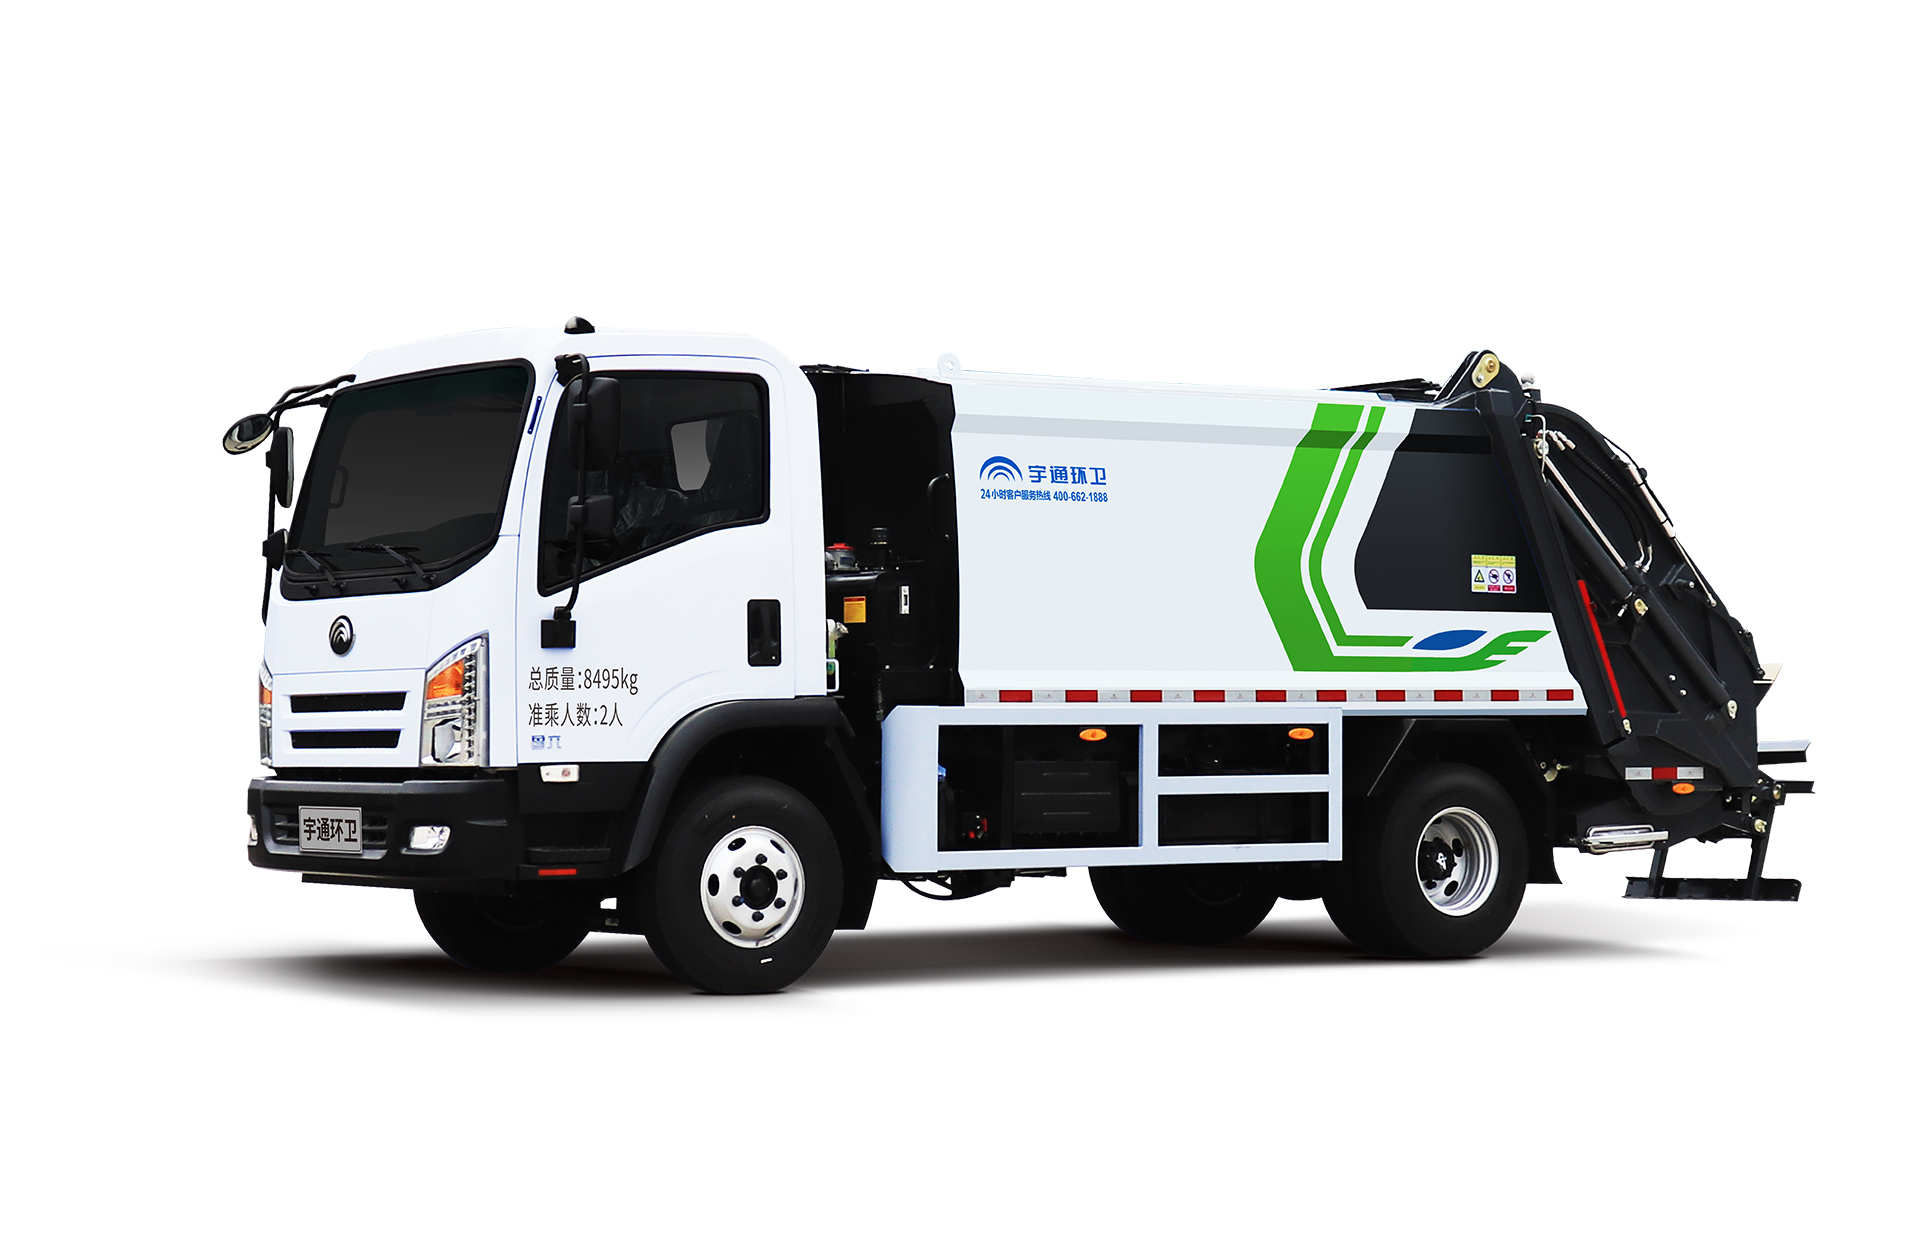 8t壓縮式垃圾車 宇通環衛壓縮式垃圾車主要具有裝載能力強、垃圾可壓縮、密封性能好等特點。